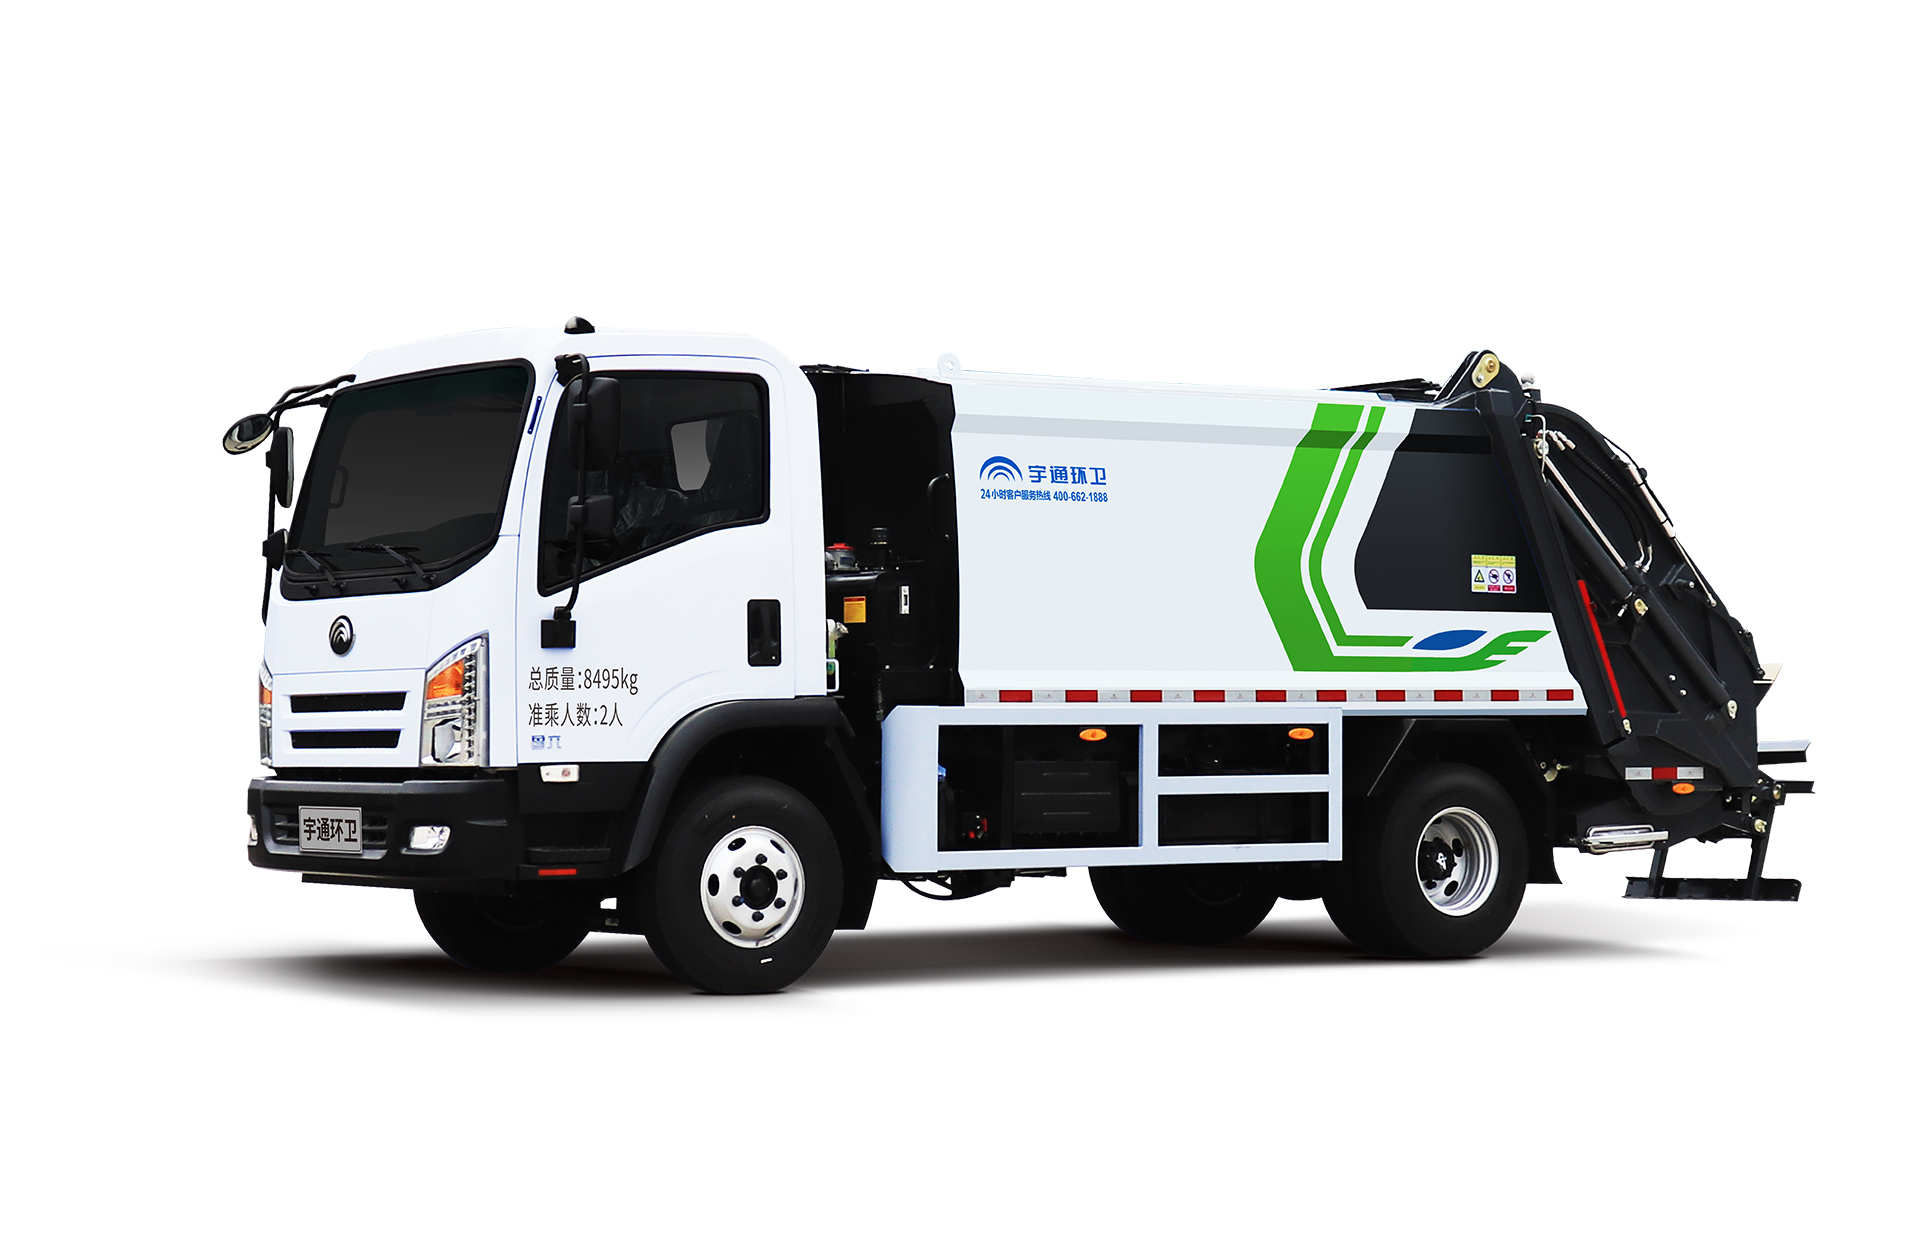 8t壓縮式垃圾車 宇通環衛壓縮式垃圾車主要具有裝載能力強、垃圾可壓縮、密封性能好等特點。